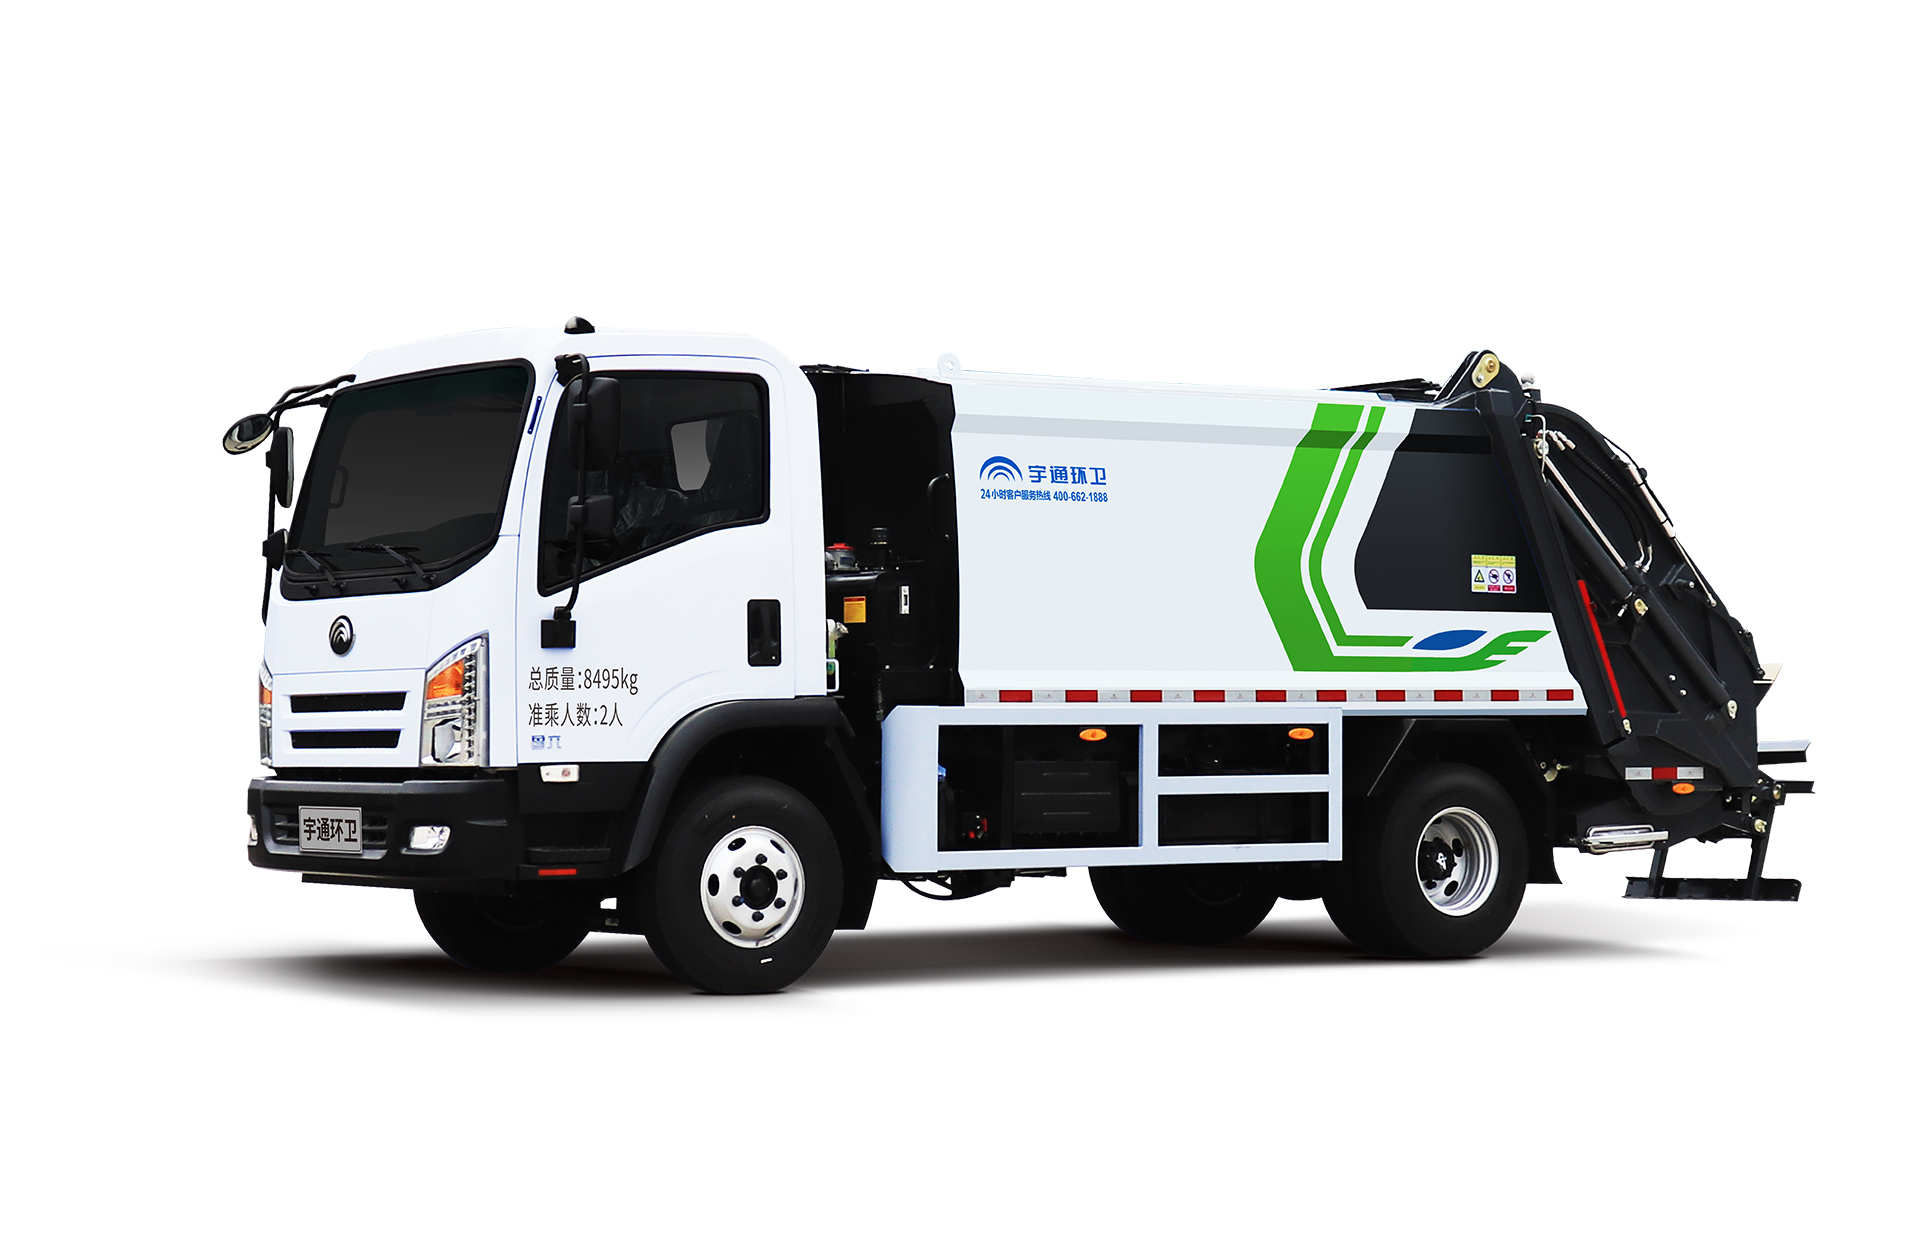 8t壓縮式垃圾車 宇通環衛壓縮式垃圾車主要具有裝載能力強、垃圾可壓縮、密封性能好等特點。